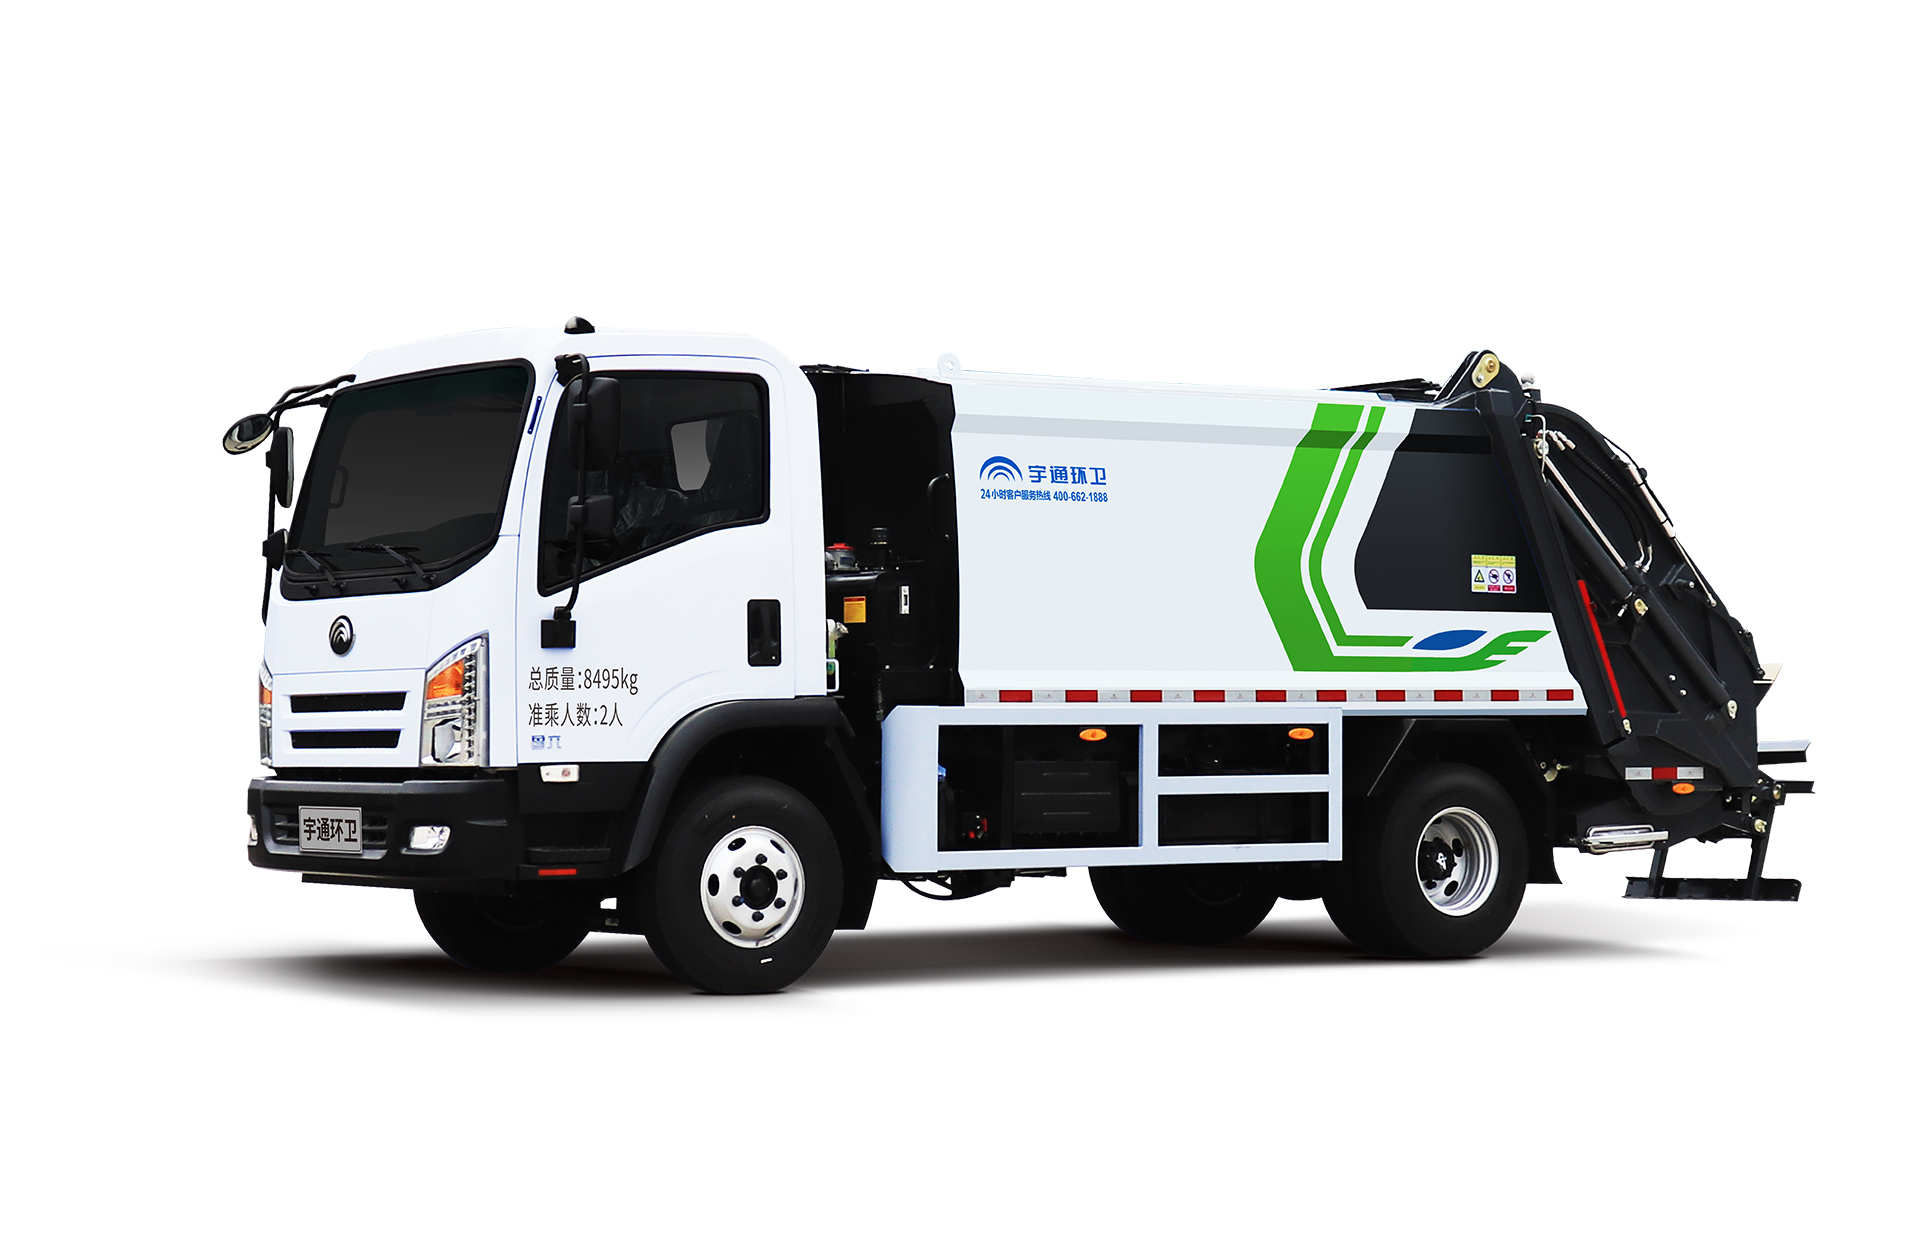 8t壓縮式垃圾車 宇通環衛壓縮式垃圾車主要具有裝載能力強、垃圾可壓縮、密封性能好等特點。